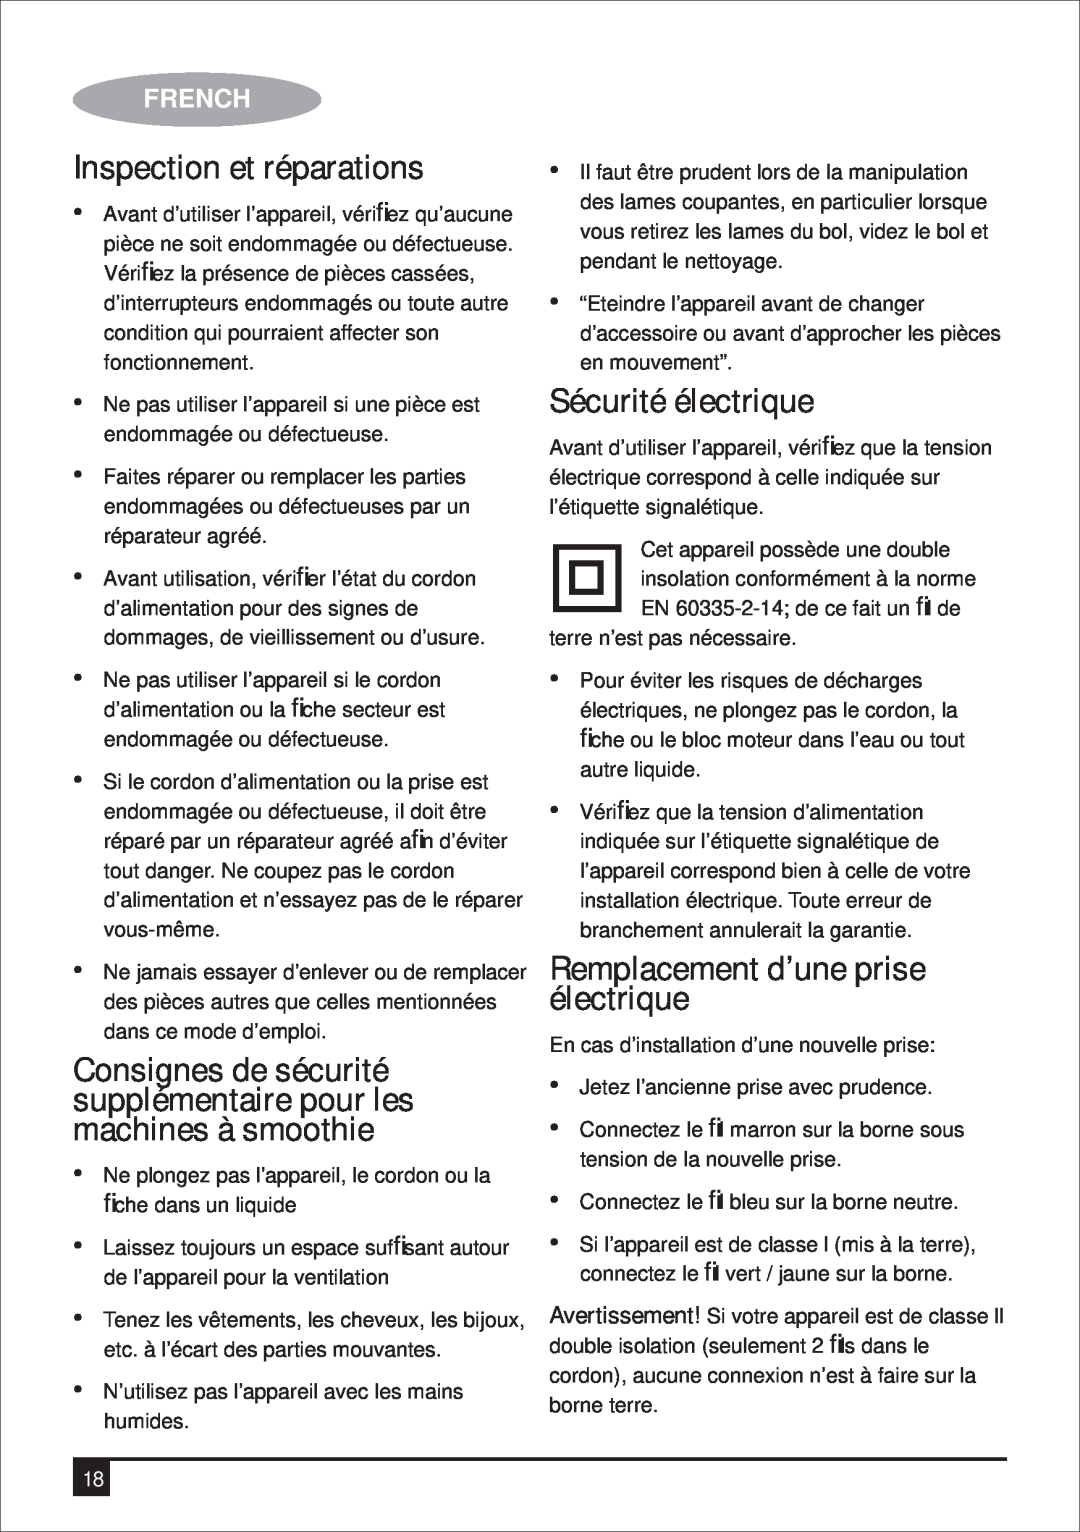 Black & Decker BS600 manual Inspection et réparations, Sécurité électrique, Remplacement d’une prise électrique, French 